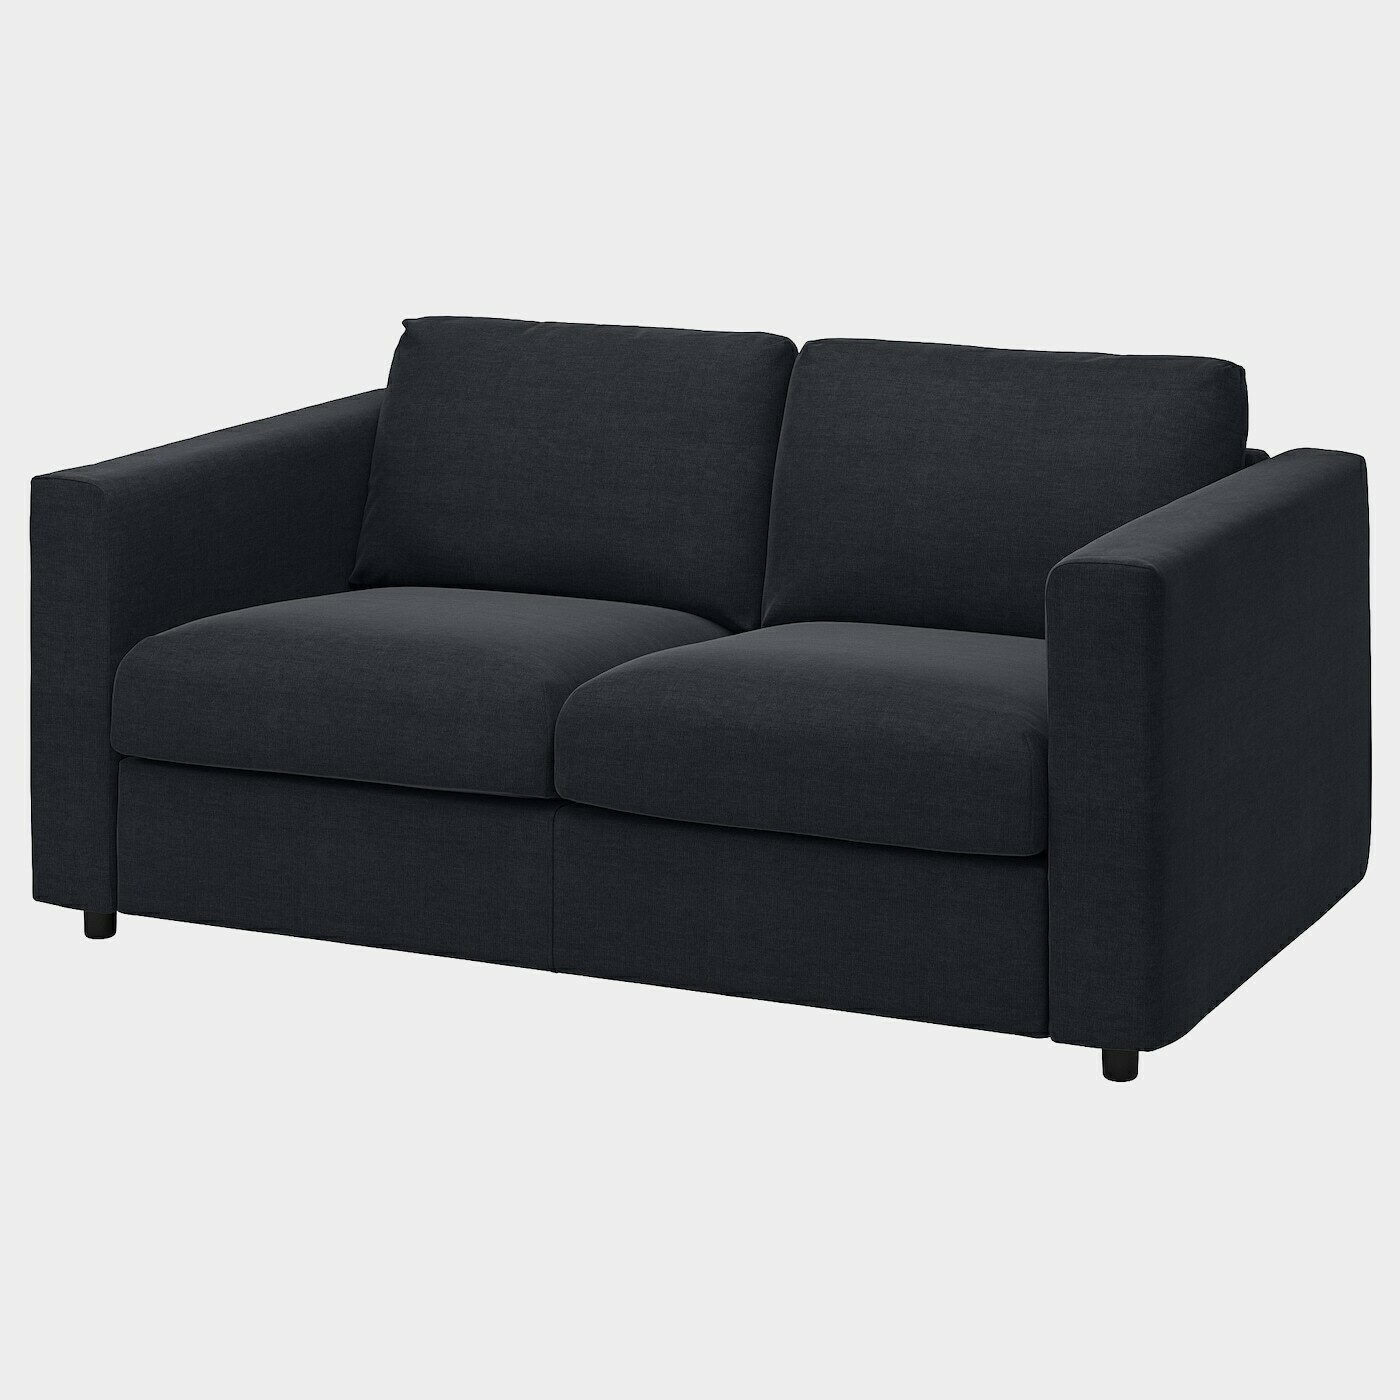 VIMLE 2er-Sofa  -  - Möbel Ideen für dein Zuhause von Home Trends. Möbel Trends von Social Media Influencer für dein Skandi Zuhause.